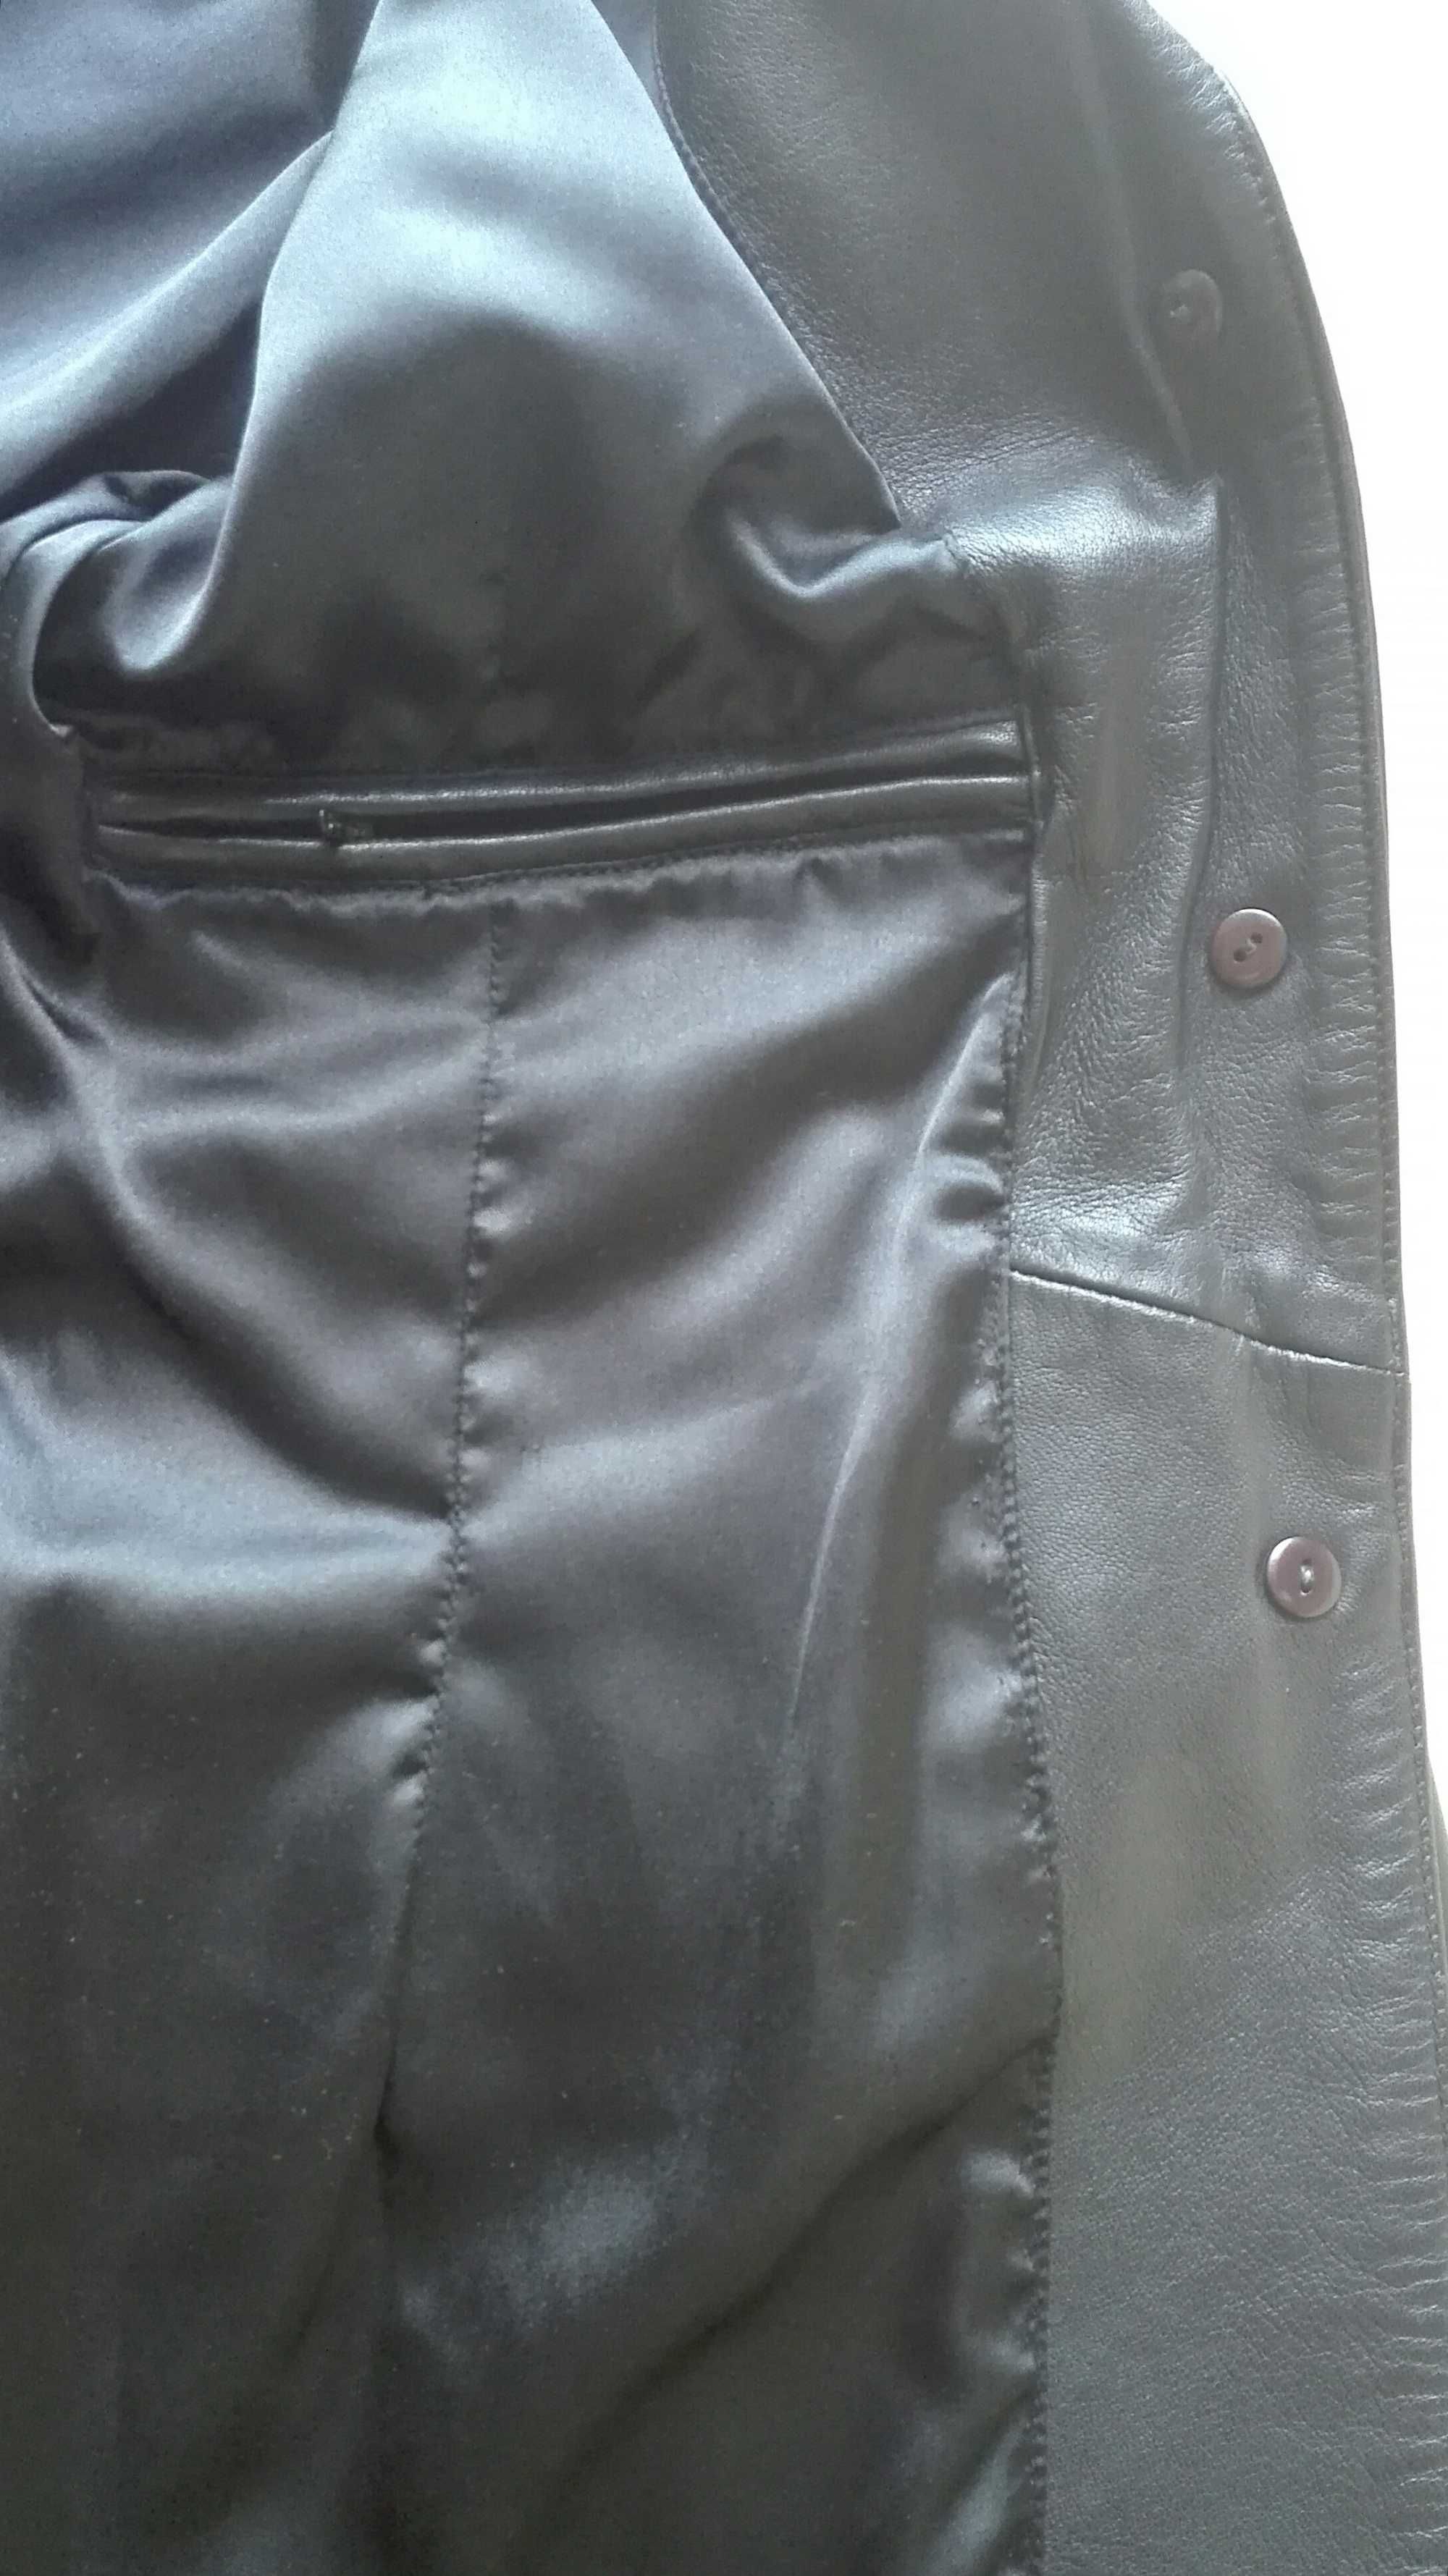 Leather skóra kurtka marynarka rozmiar S/M